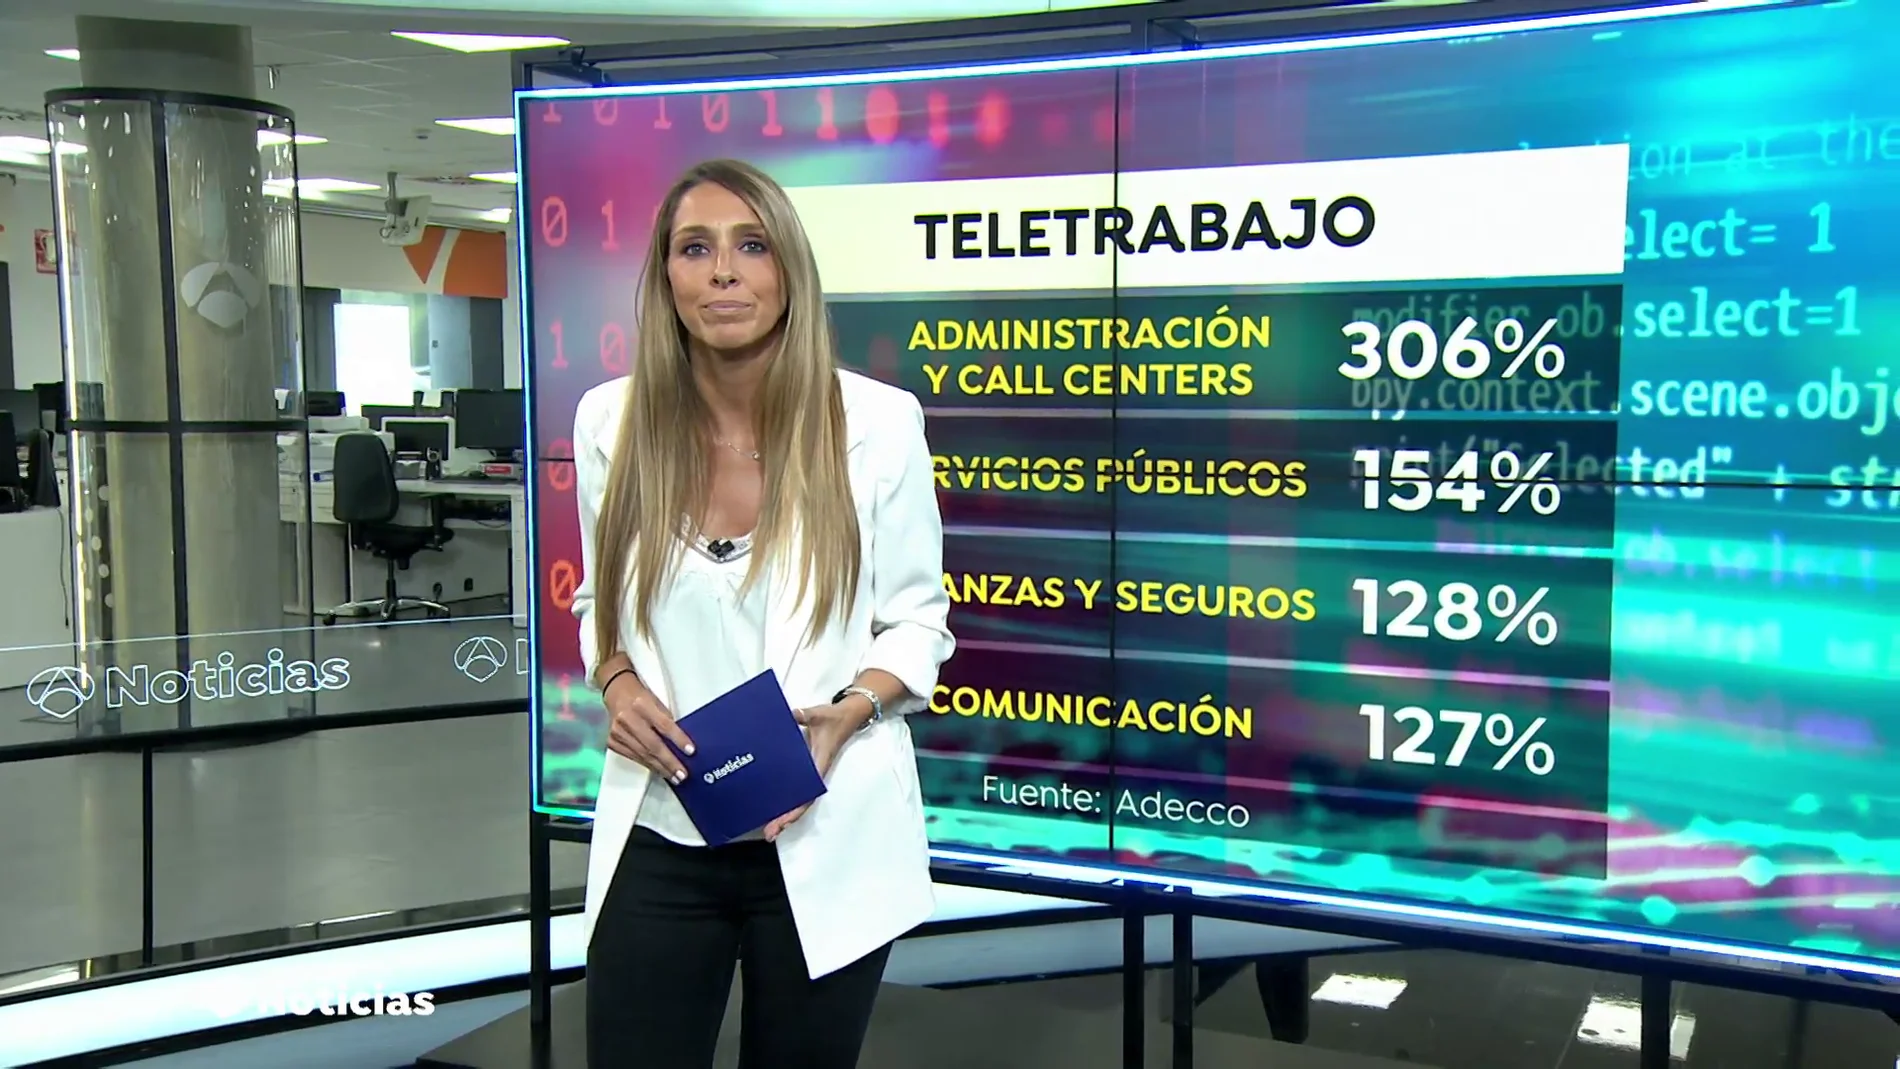 Crecen las ofertas de teletrabajo en España un 214% en el último año